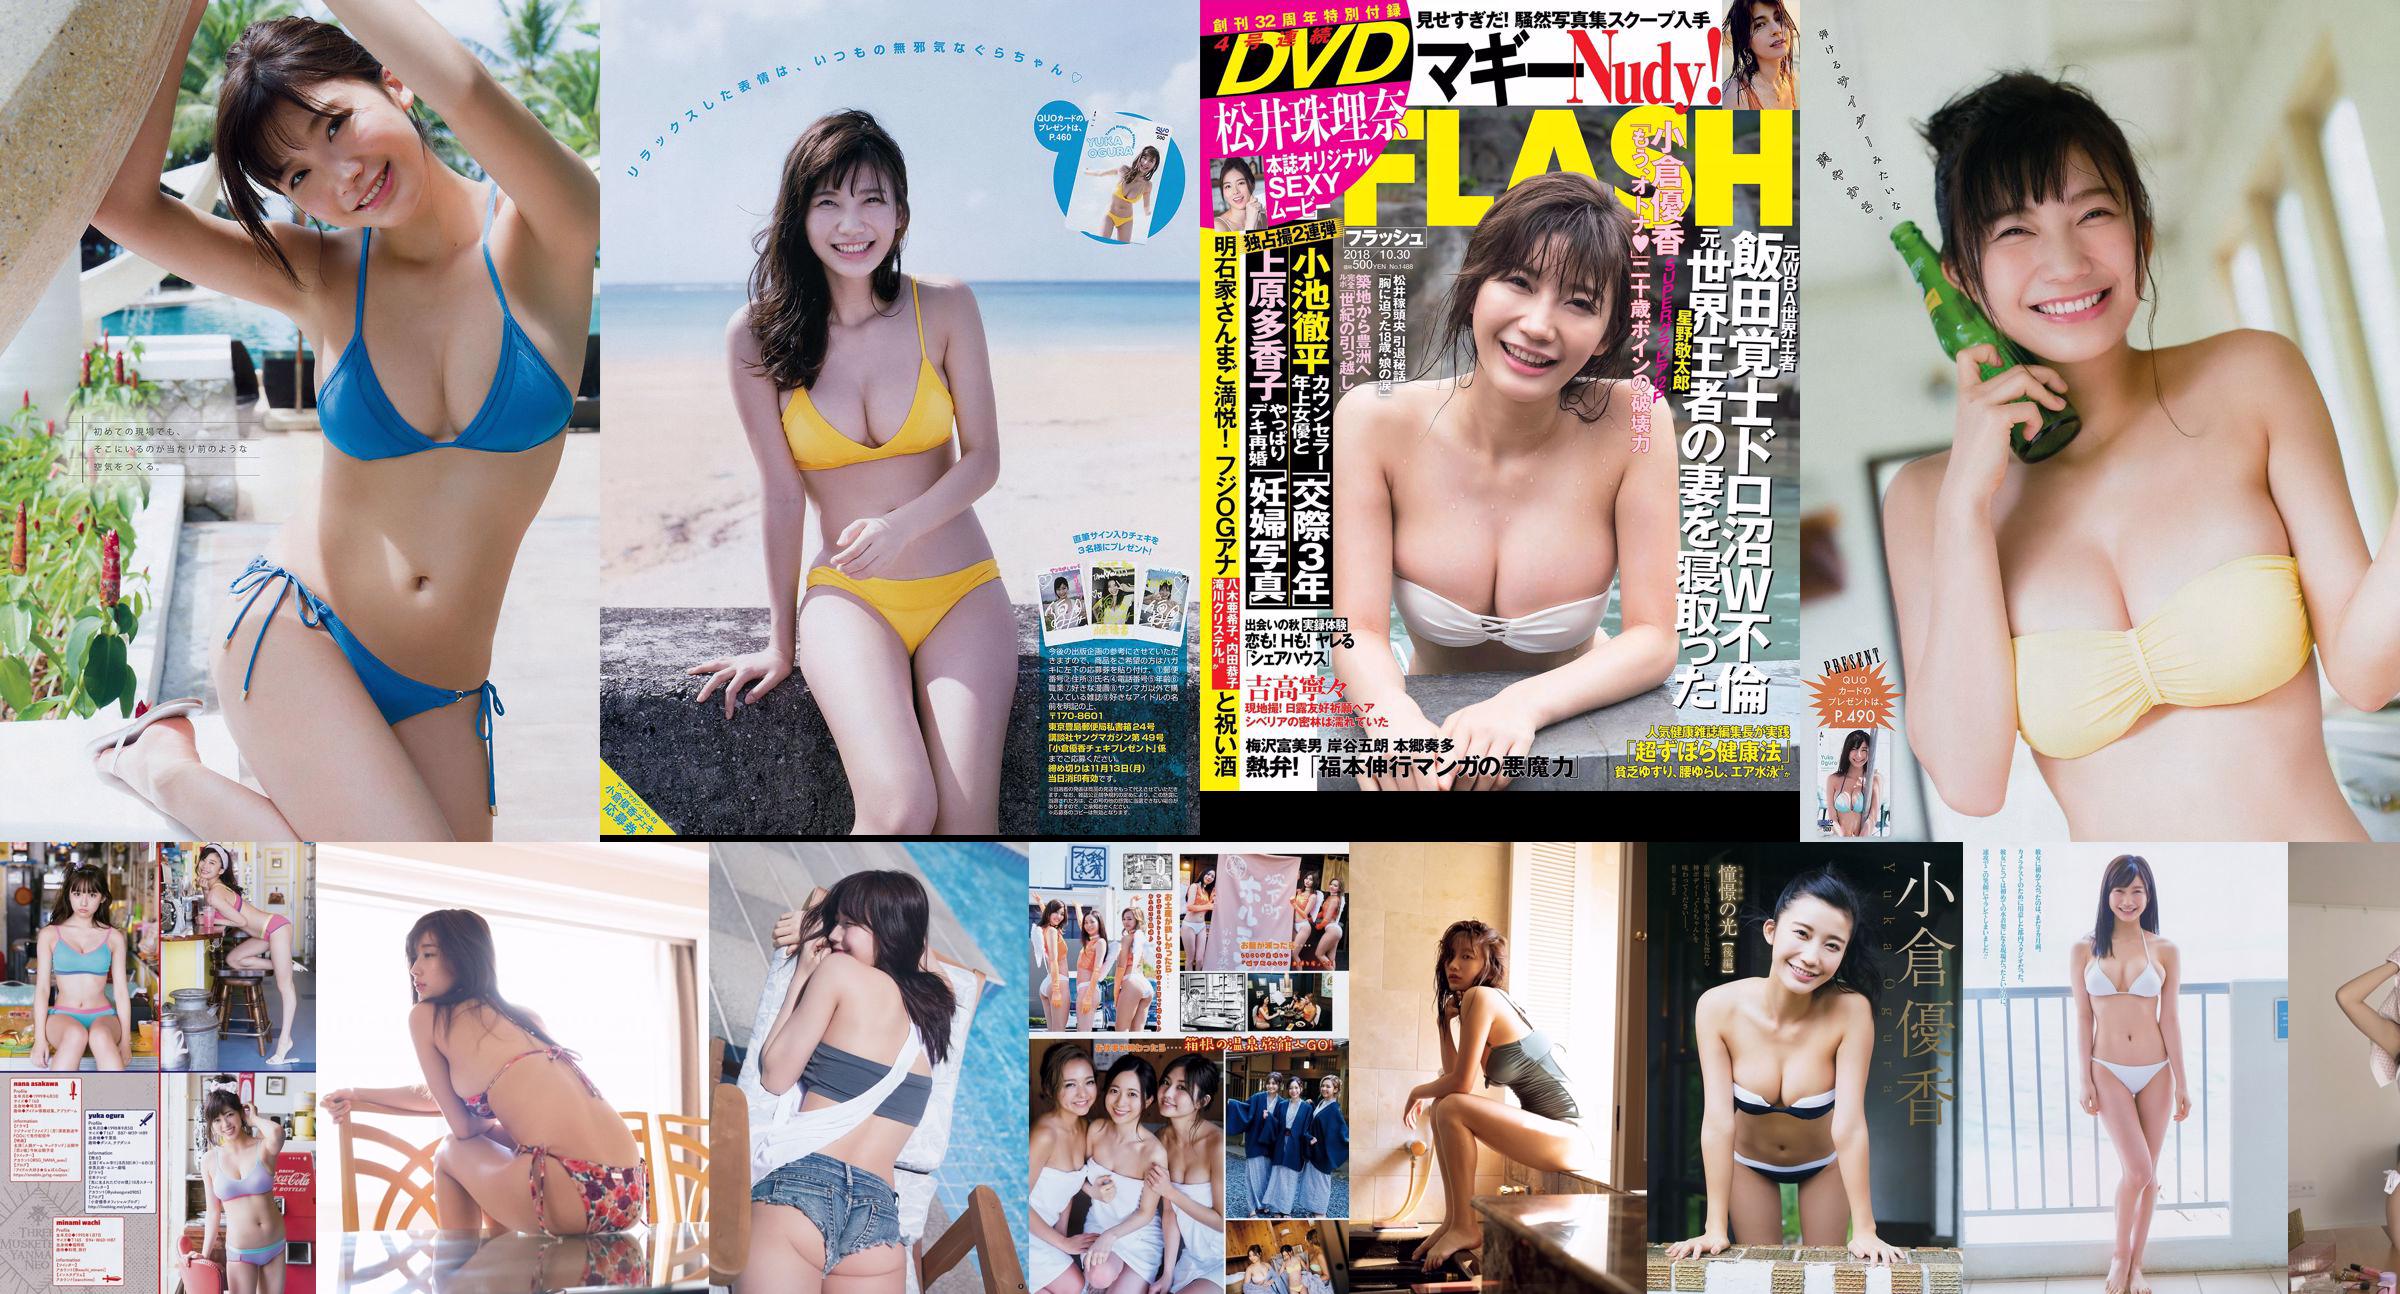 Yuka Ogura Minami Kato Honoka Shiori Tamada Riko Fukumoto Yumiko Takino Mayu Yoshikawa Aimi [Weekly Playboy] 2018 No.25 Photo Mori No.bcb033 第1頁